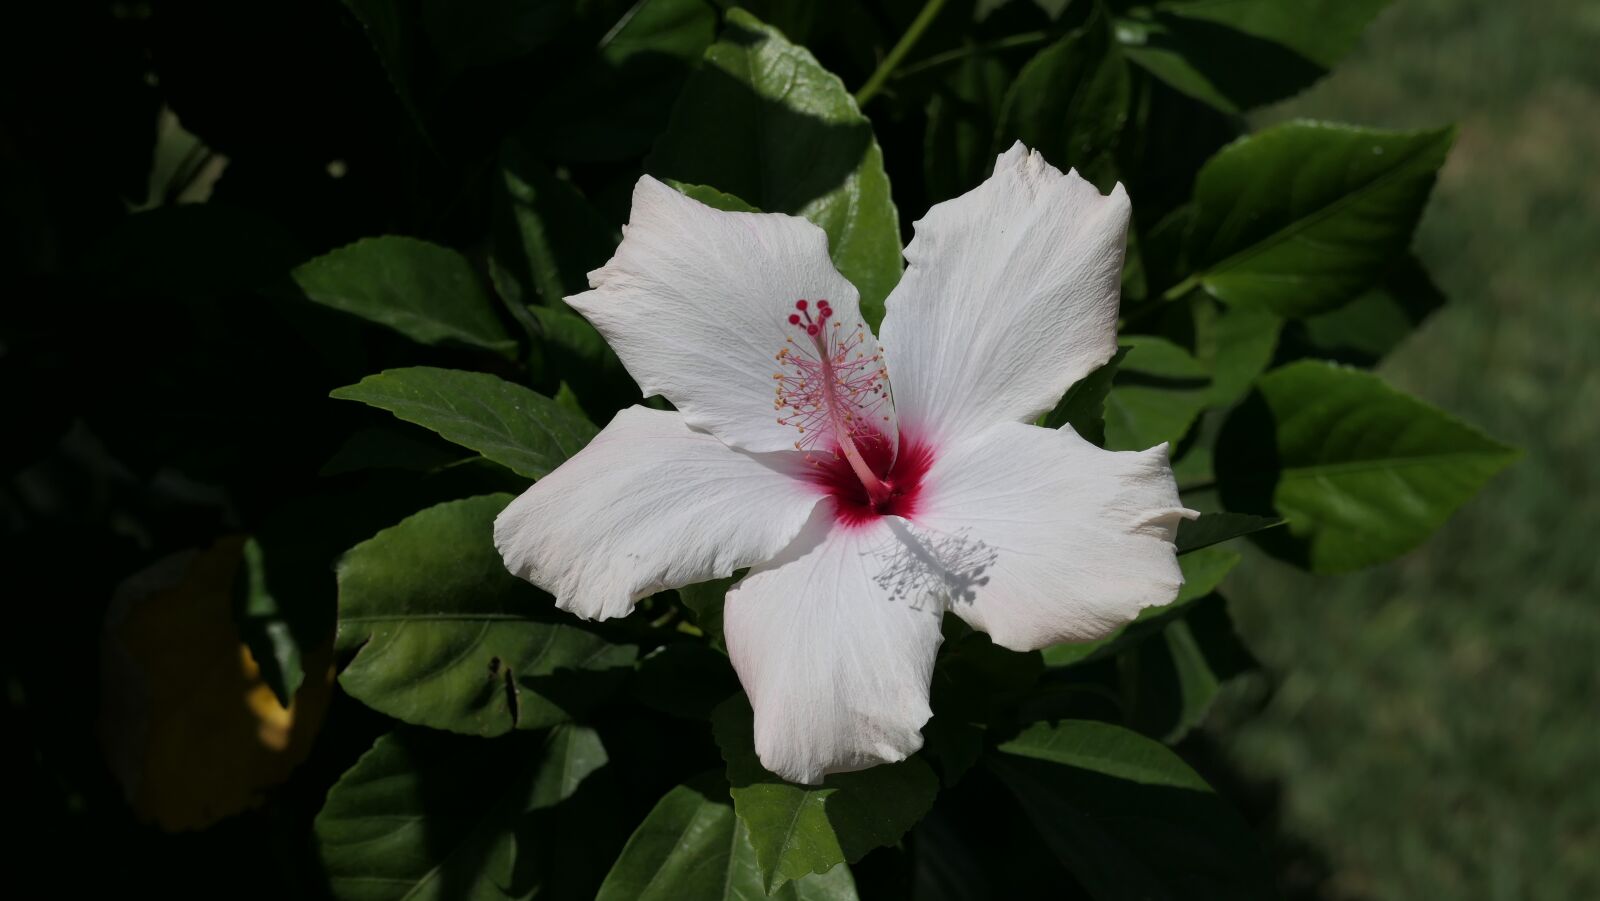 Panasonic DC-FZ10002 sample photo. Hibiscus, flower, white hibiscus photography